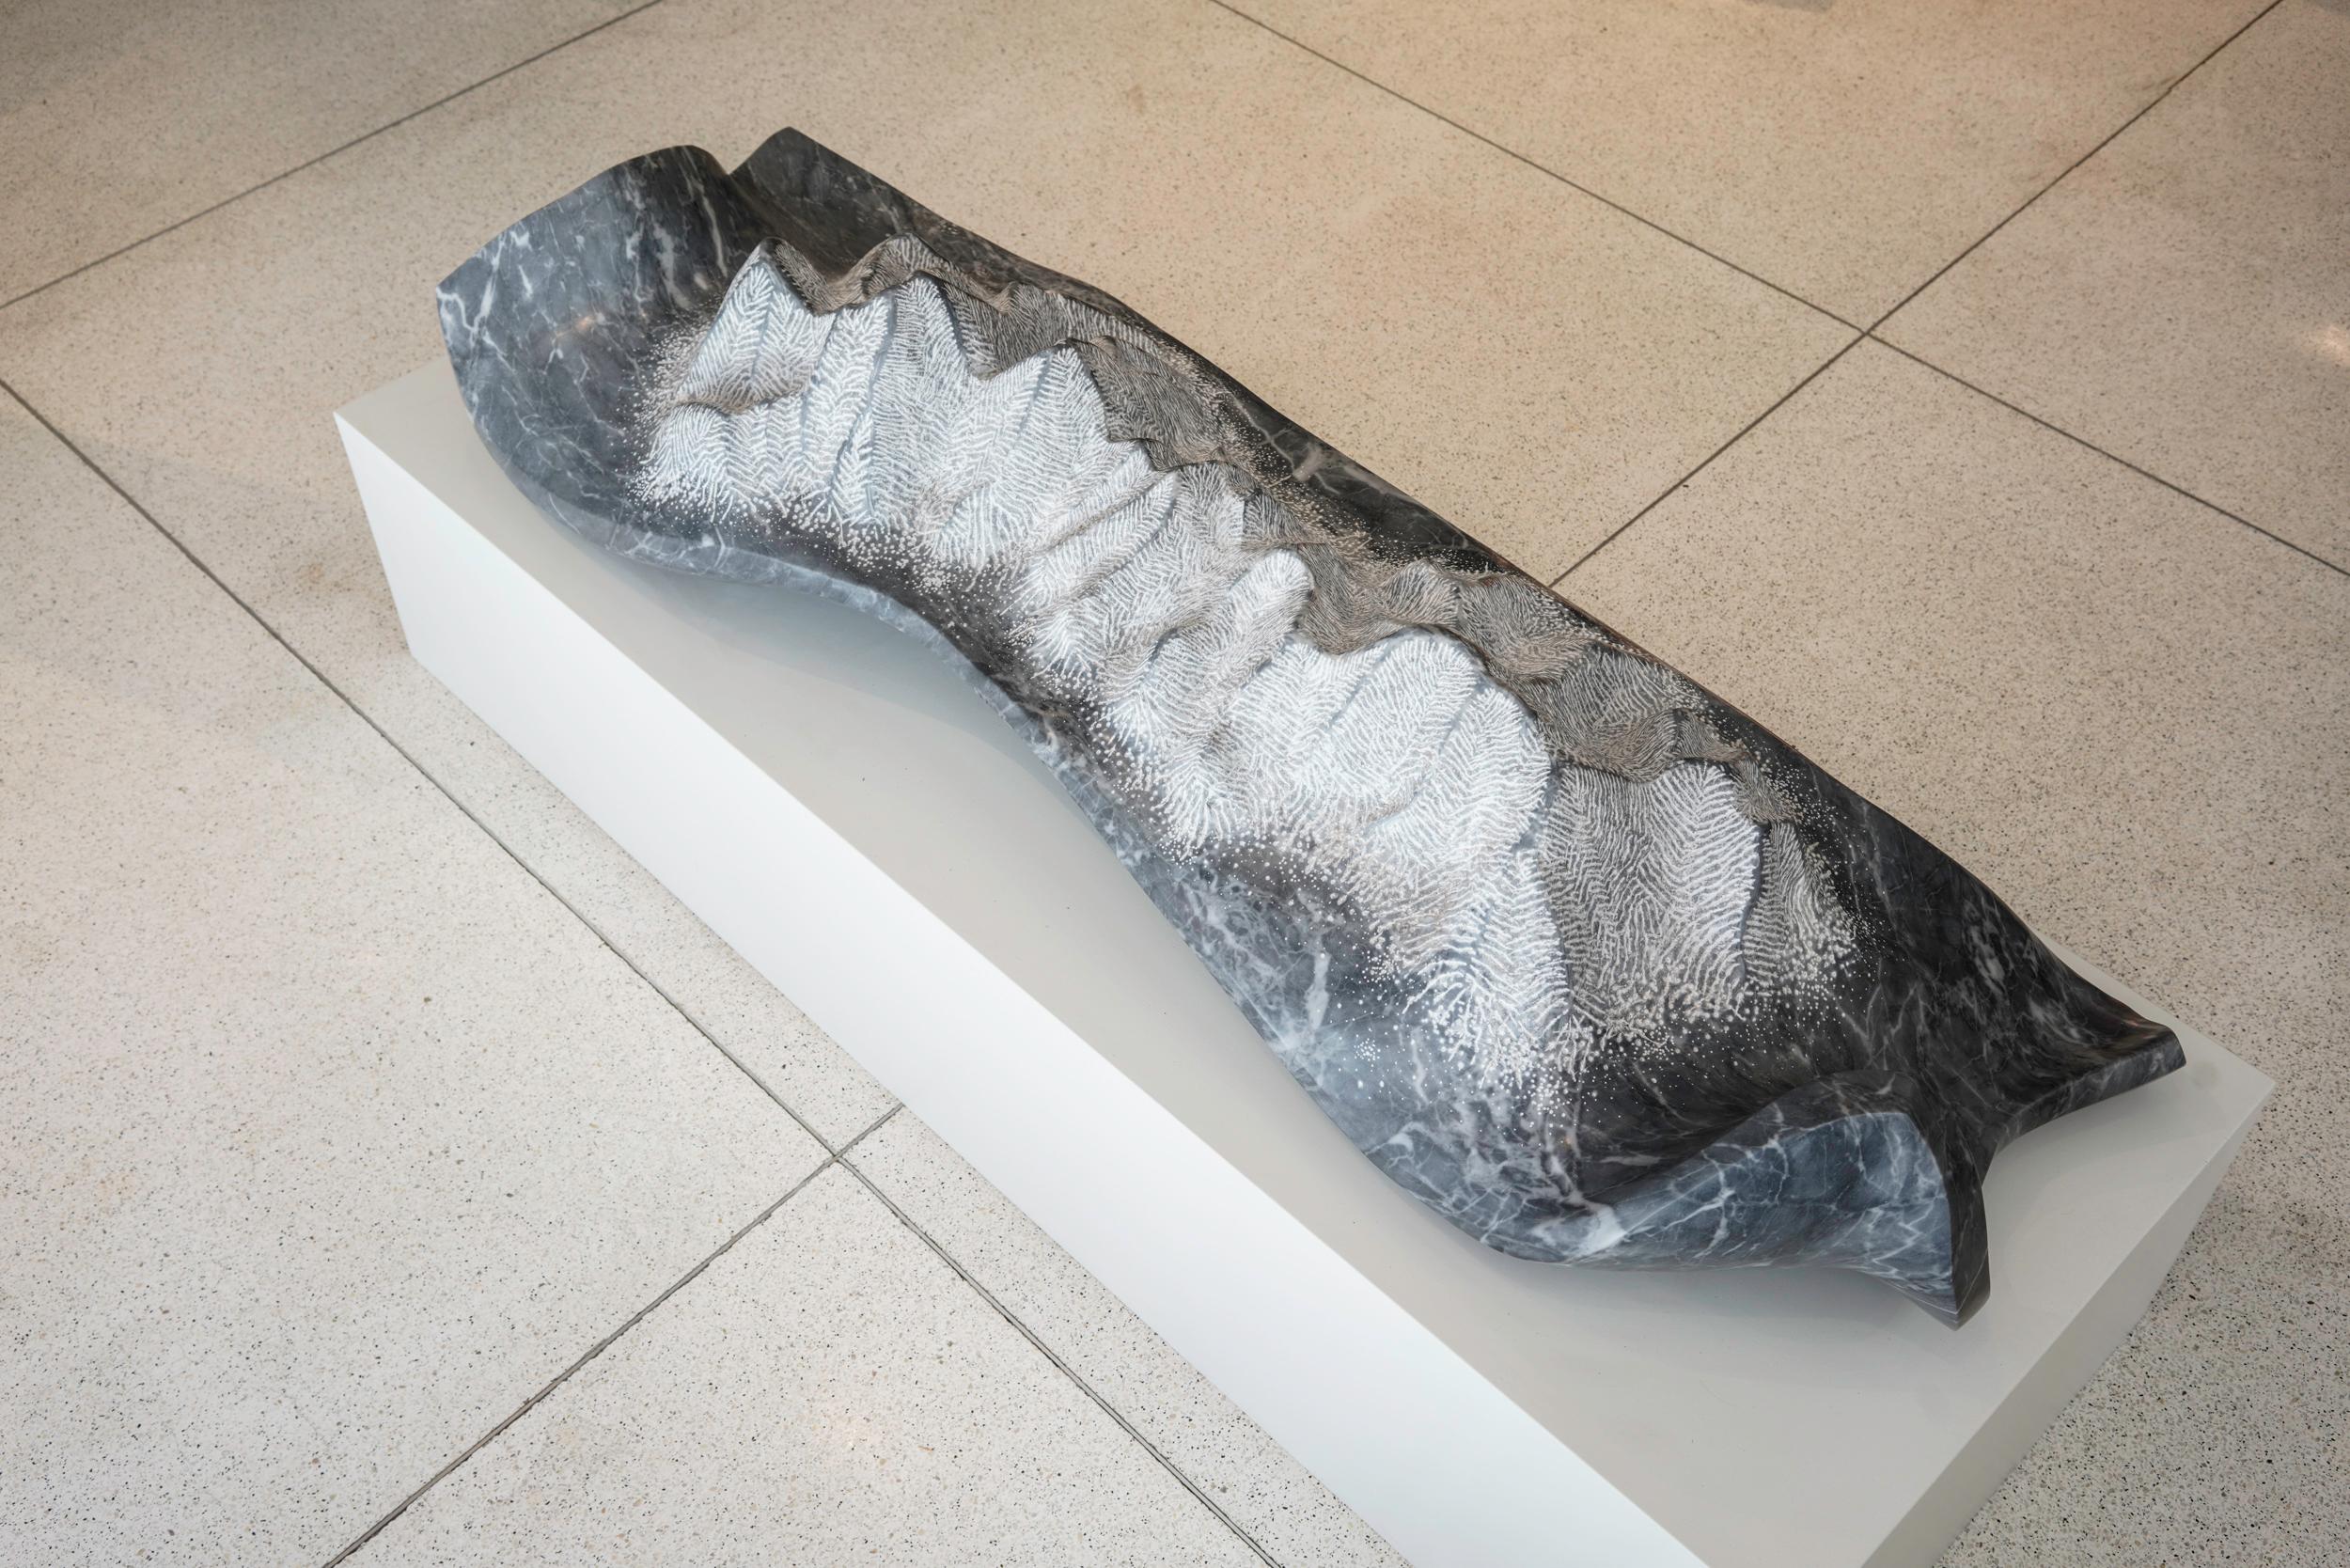 Skulptur aus grauem Marmor Bardiglio von Juan Pablo Marturano, Argentinien, 2016.
Titel: 